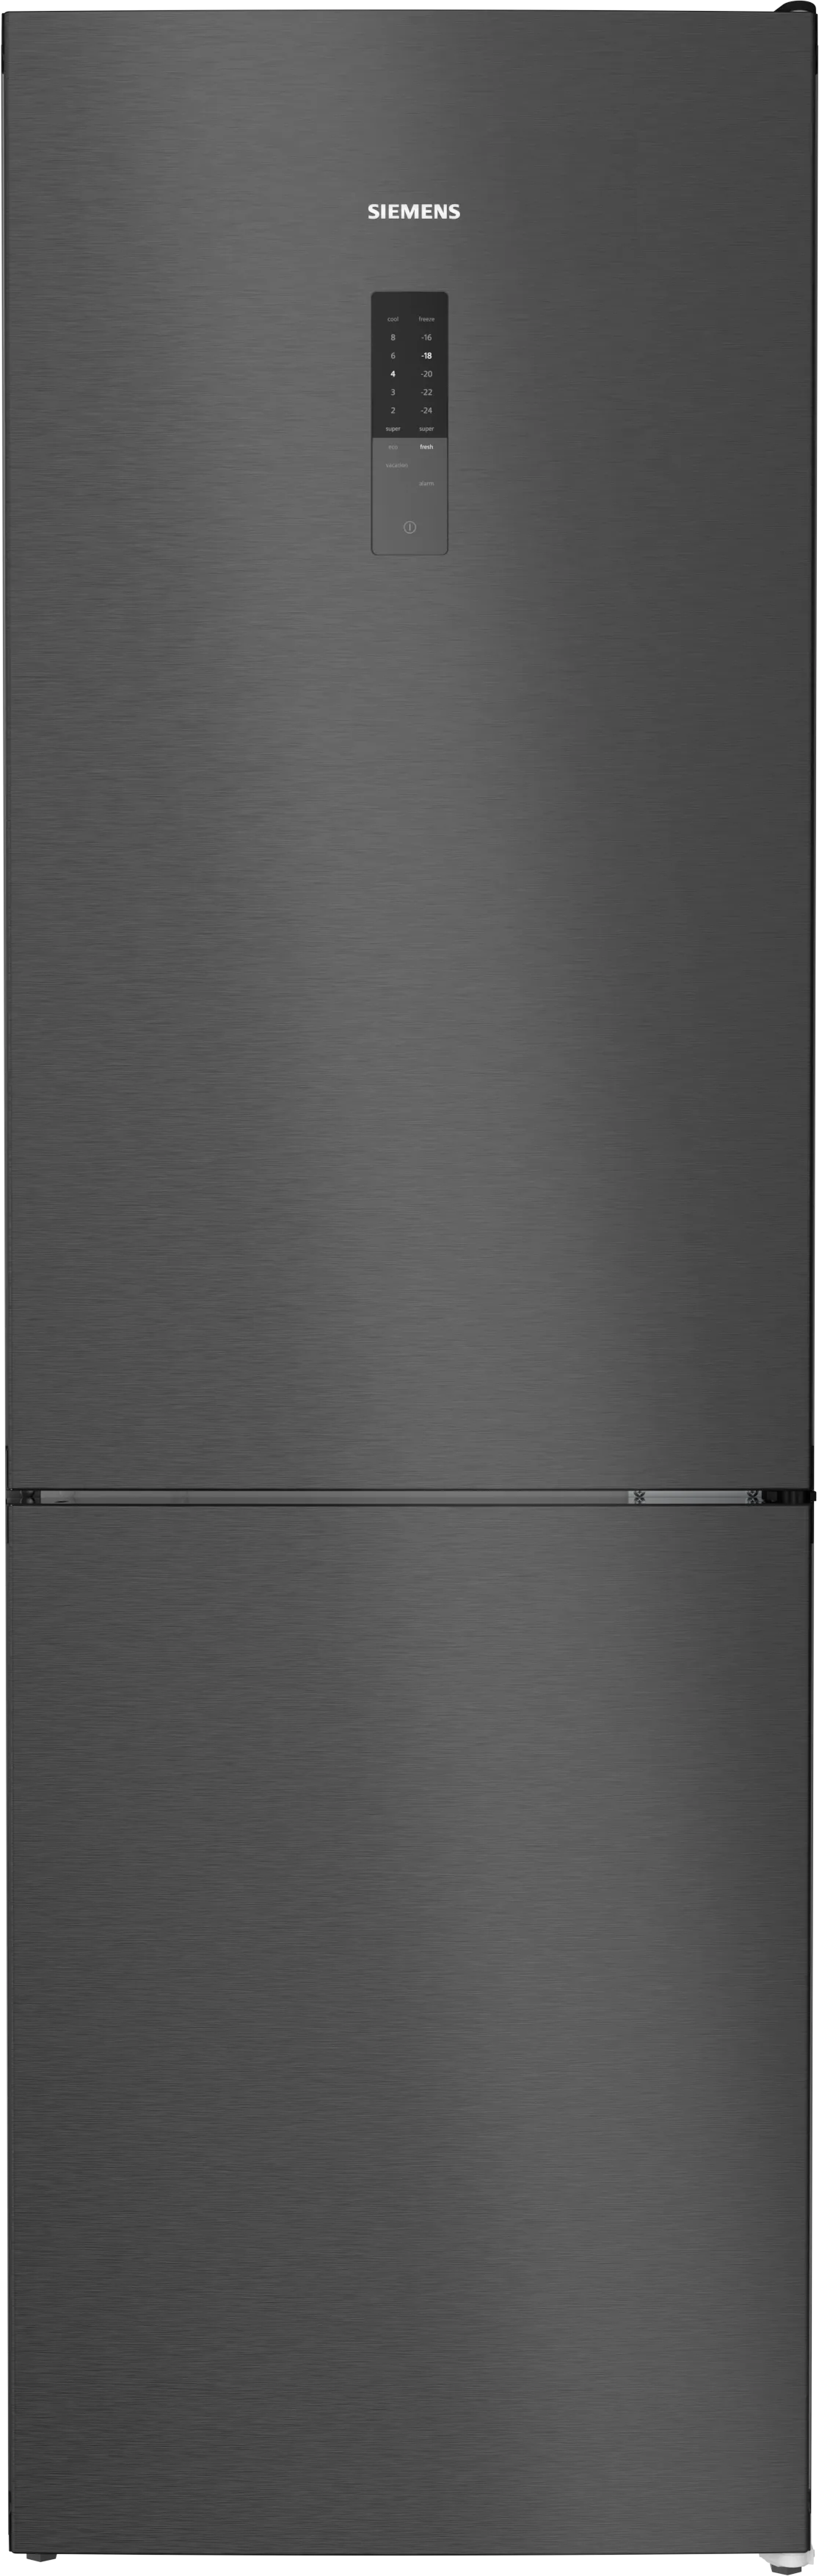 iQ300 Vrijstaande koel-vriescombinatie met bottom-freezer 186 x 60 cm Zwart geborsteld staal antiFingerprint 